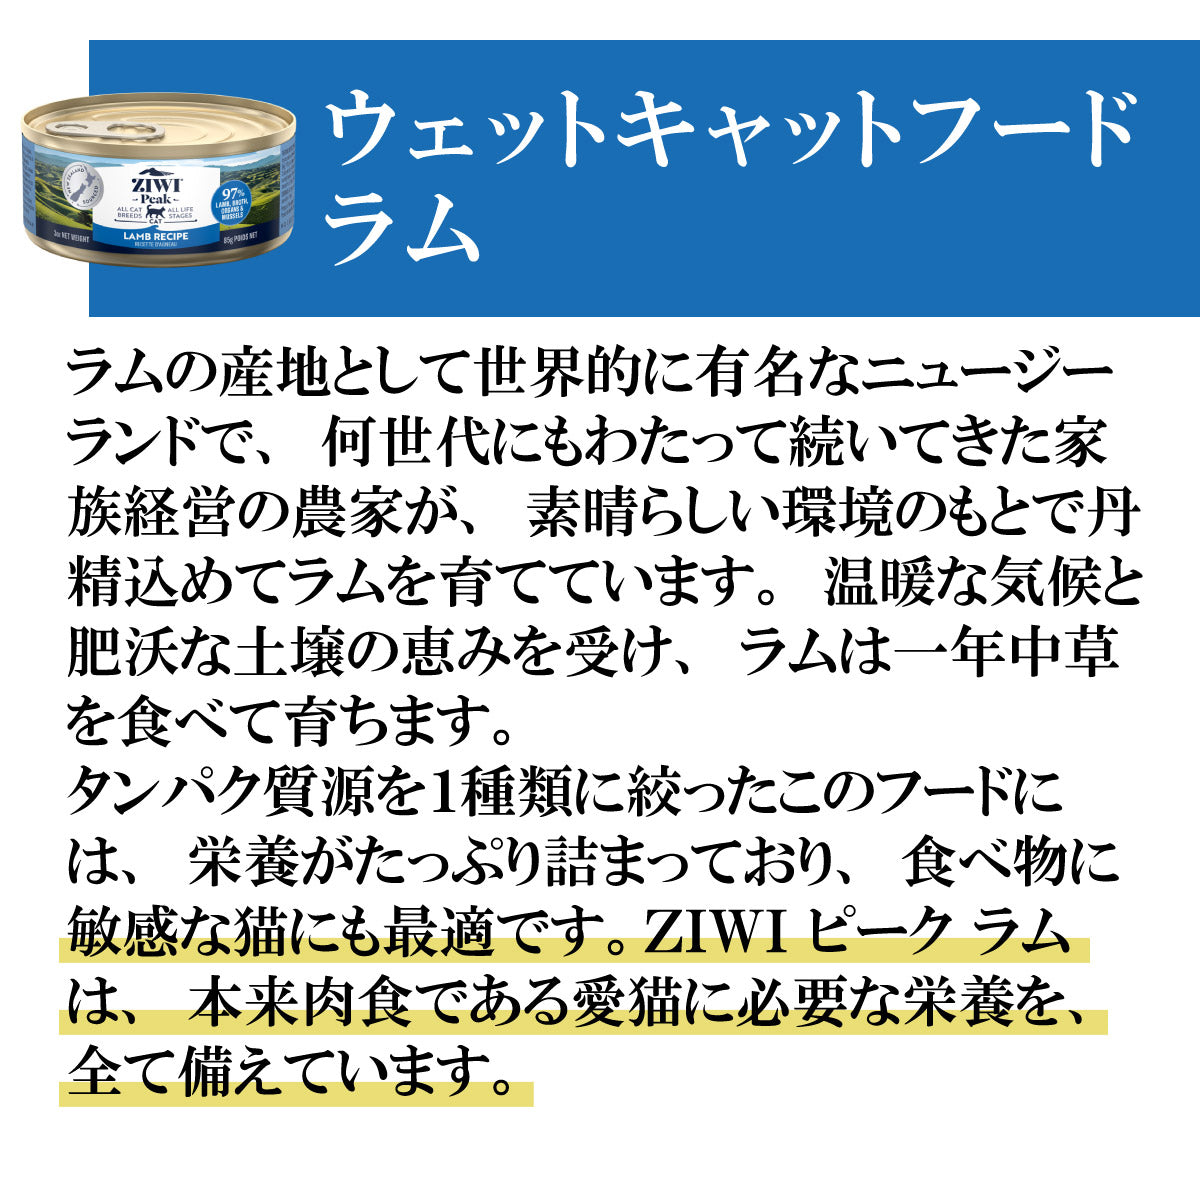 ジウィ ZIWI キャットフード キャット缶 ラム 85g×24缶【送料無料】 正規品 無添加 ジウィピーク